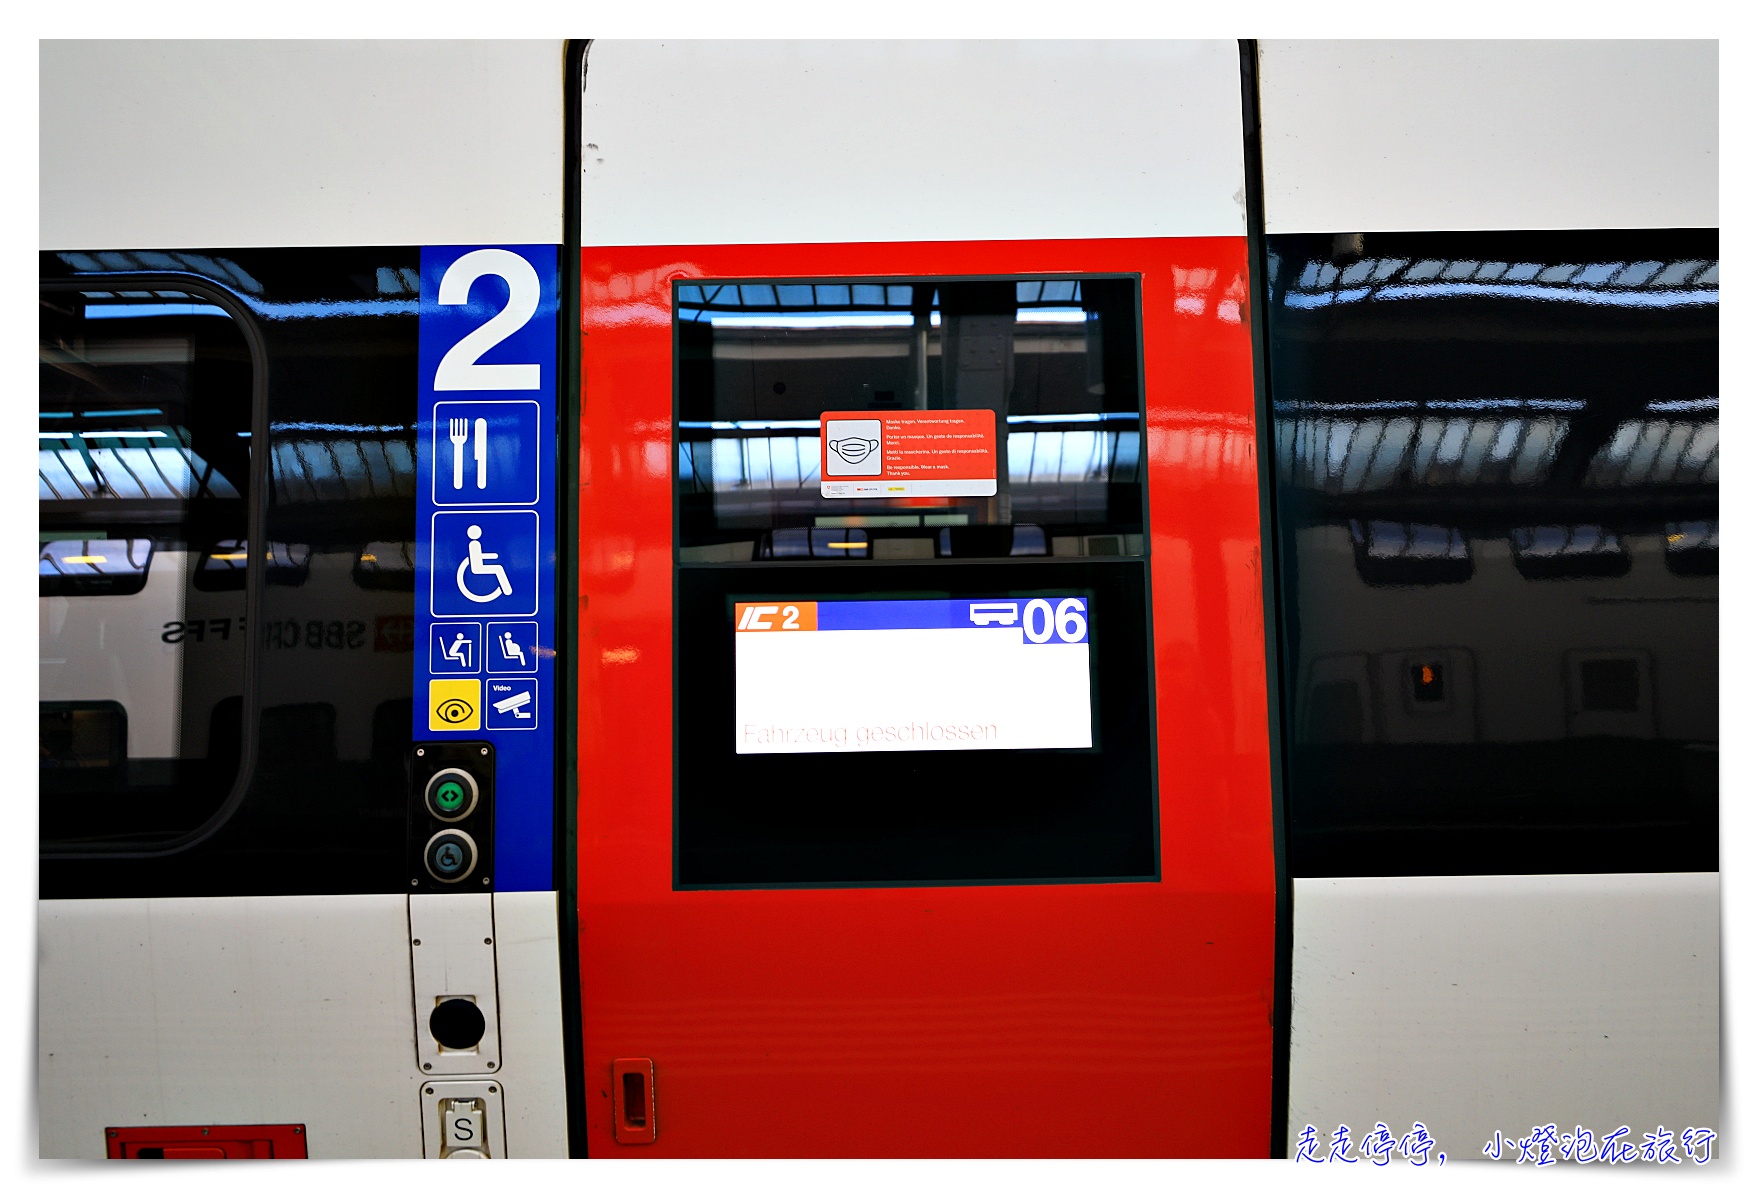 2022瑞士火車通行證Swiss travel pass 購買、使用、範圍、相關規定與優惠